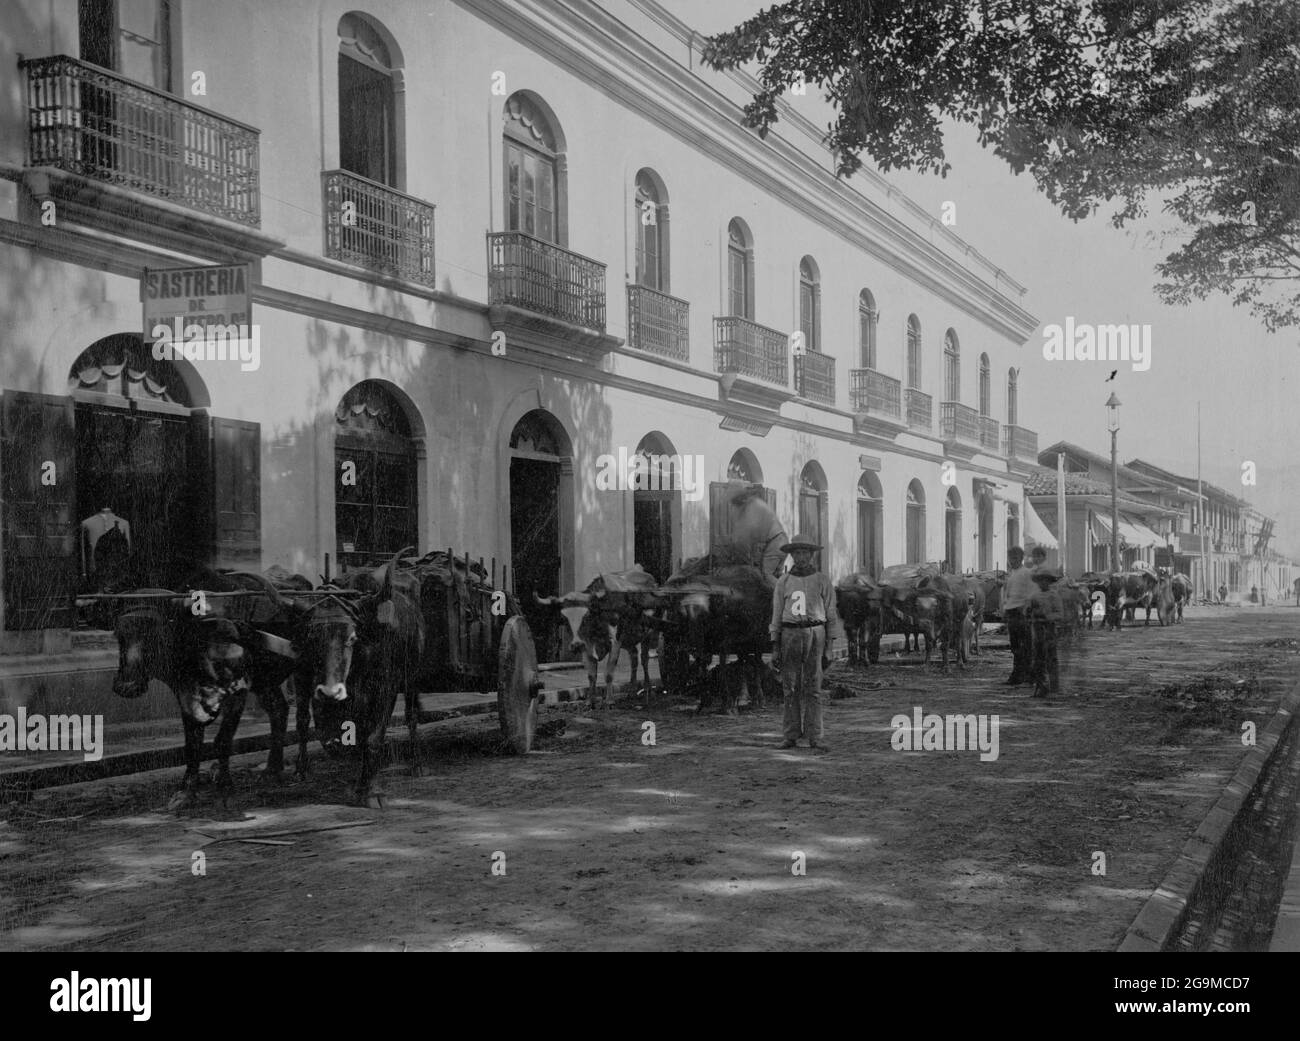 SAN JOSE, COSTA RICA - um 1880-1900 - Straßenszene in der Innenstadt von San J vor einer Reihe von Geschäften - Foto: Geopix Stockfoto